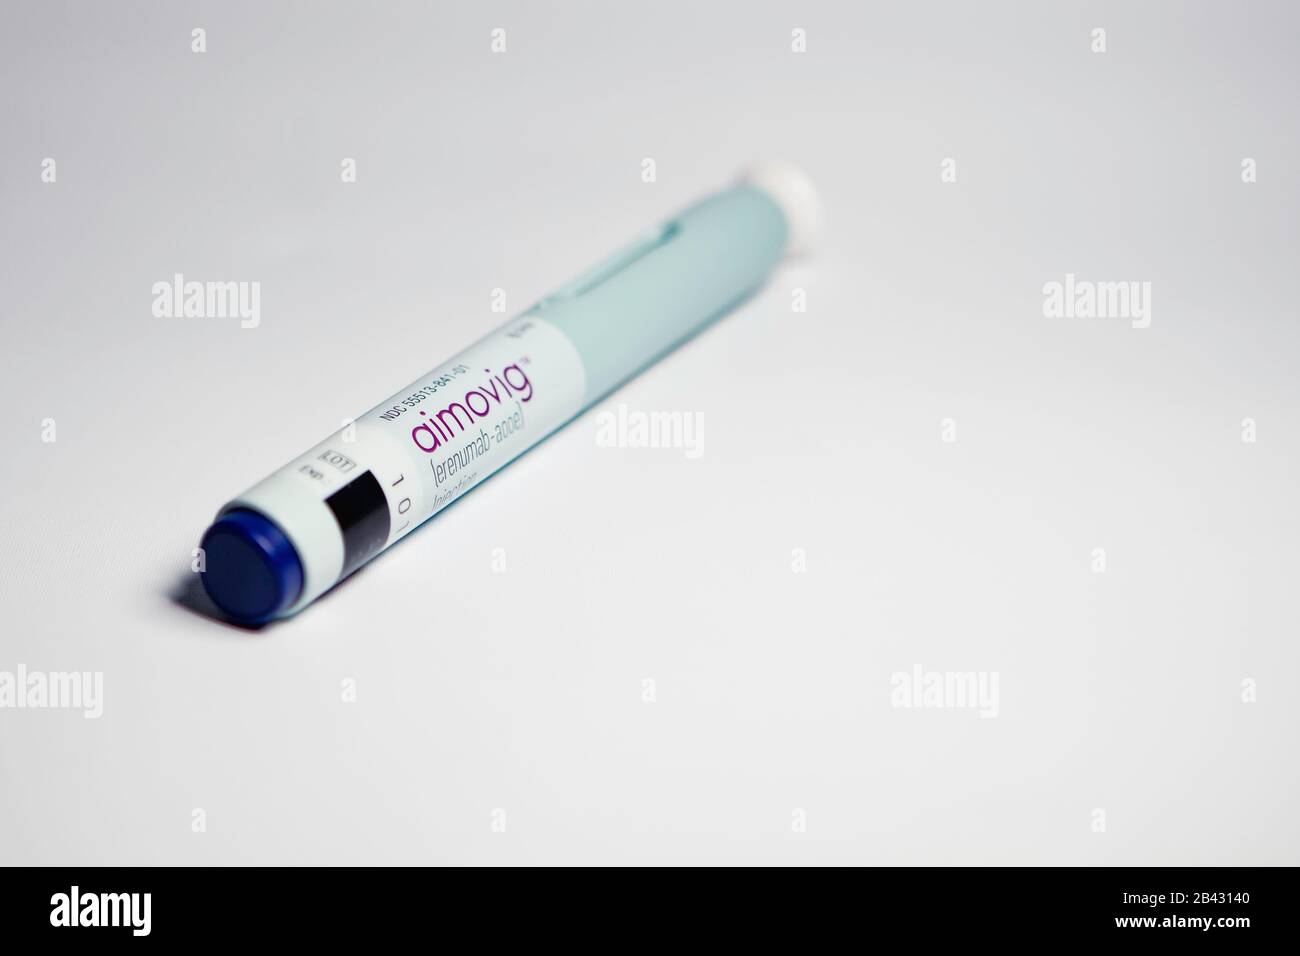 Aimovig (erenumab-aooe) 70 mg auto-injector device, prescription drug for migraine prevention, studio, color, United States Stock Photo